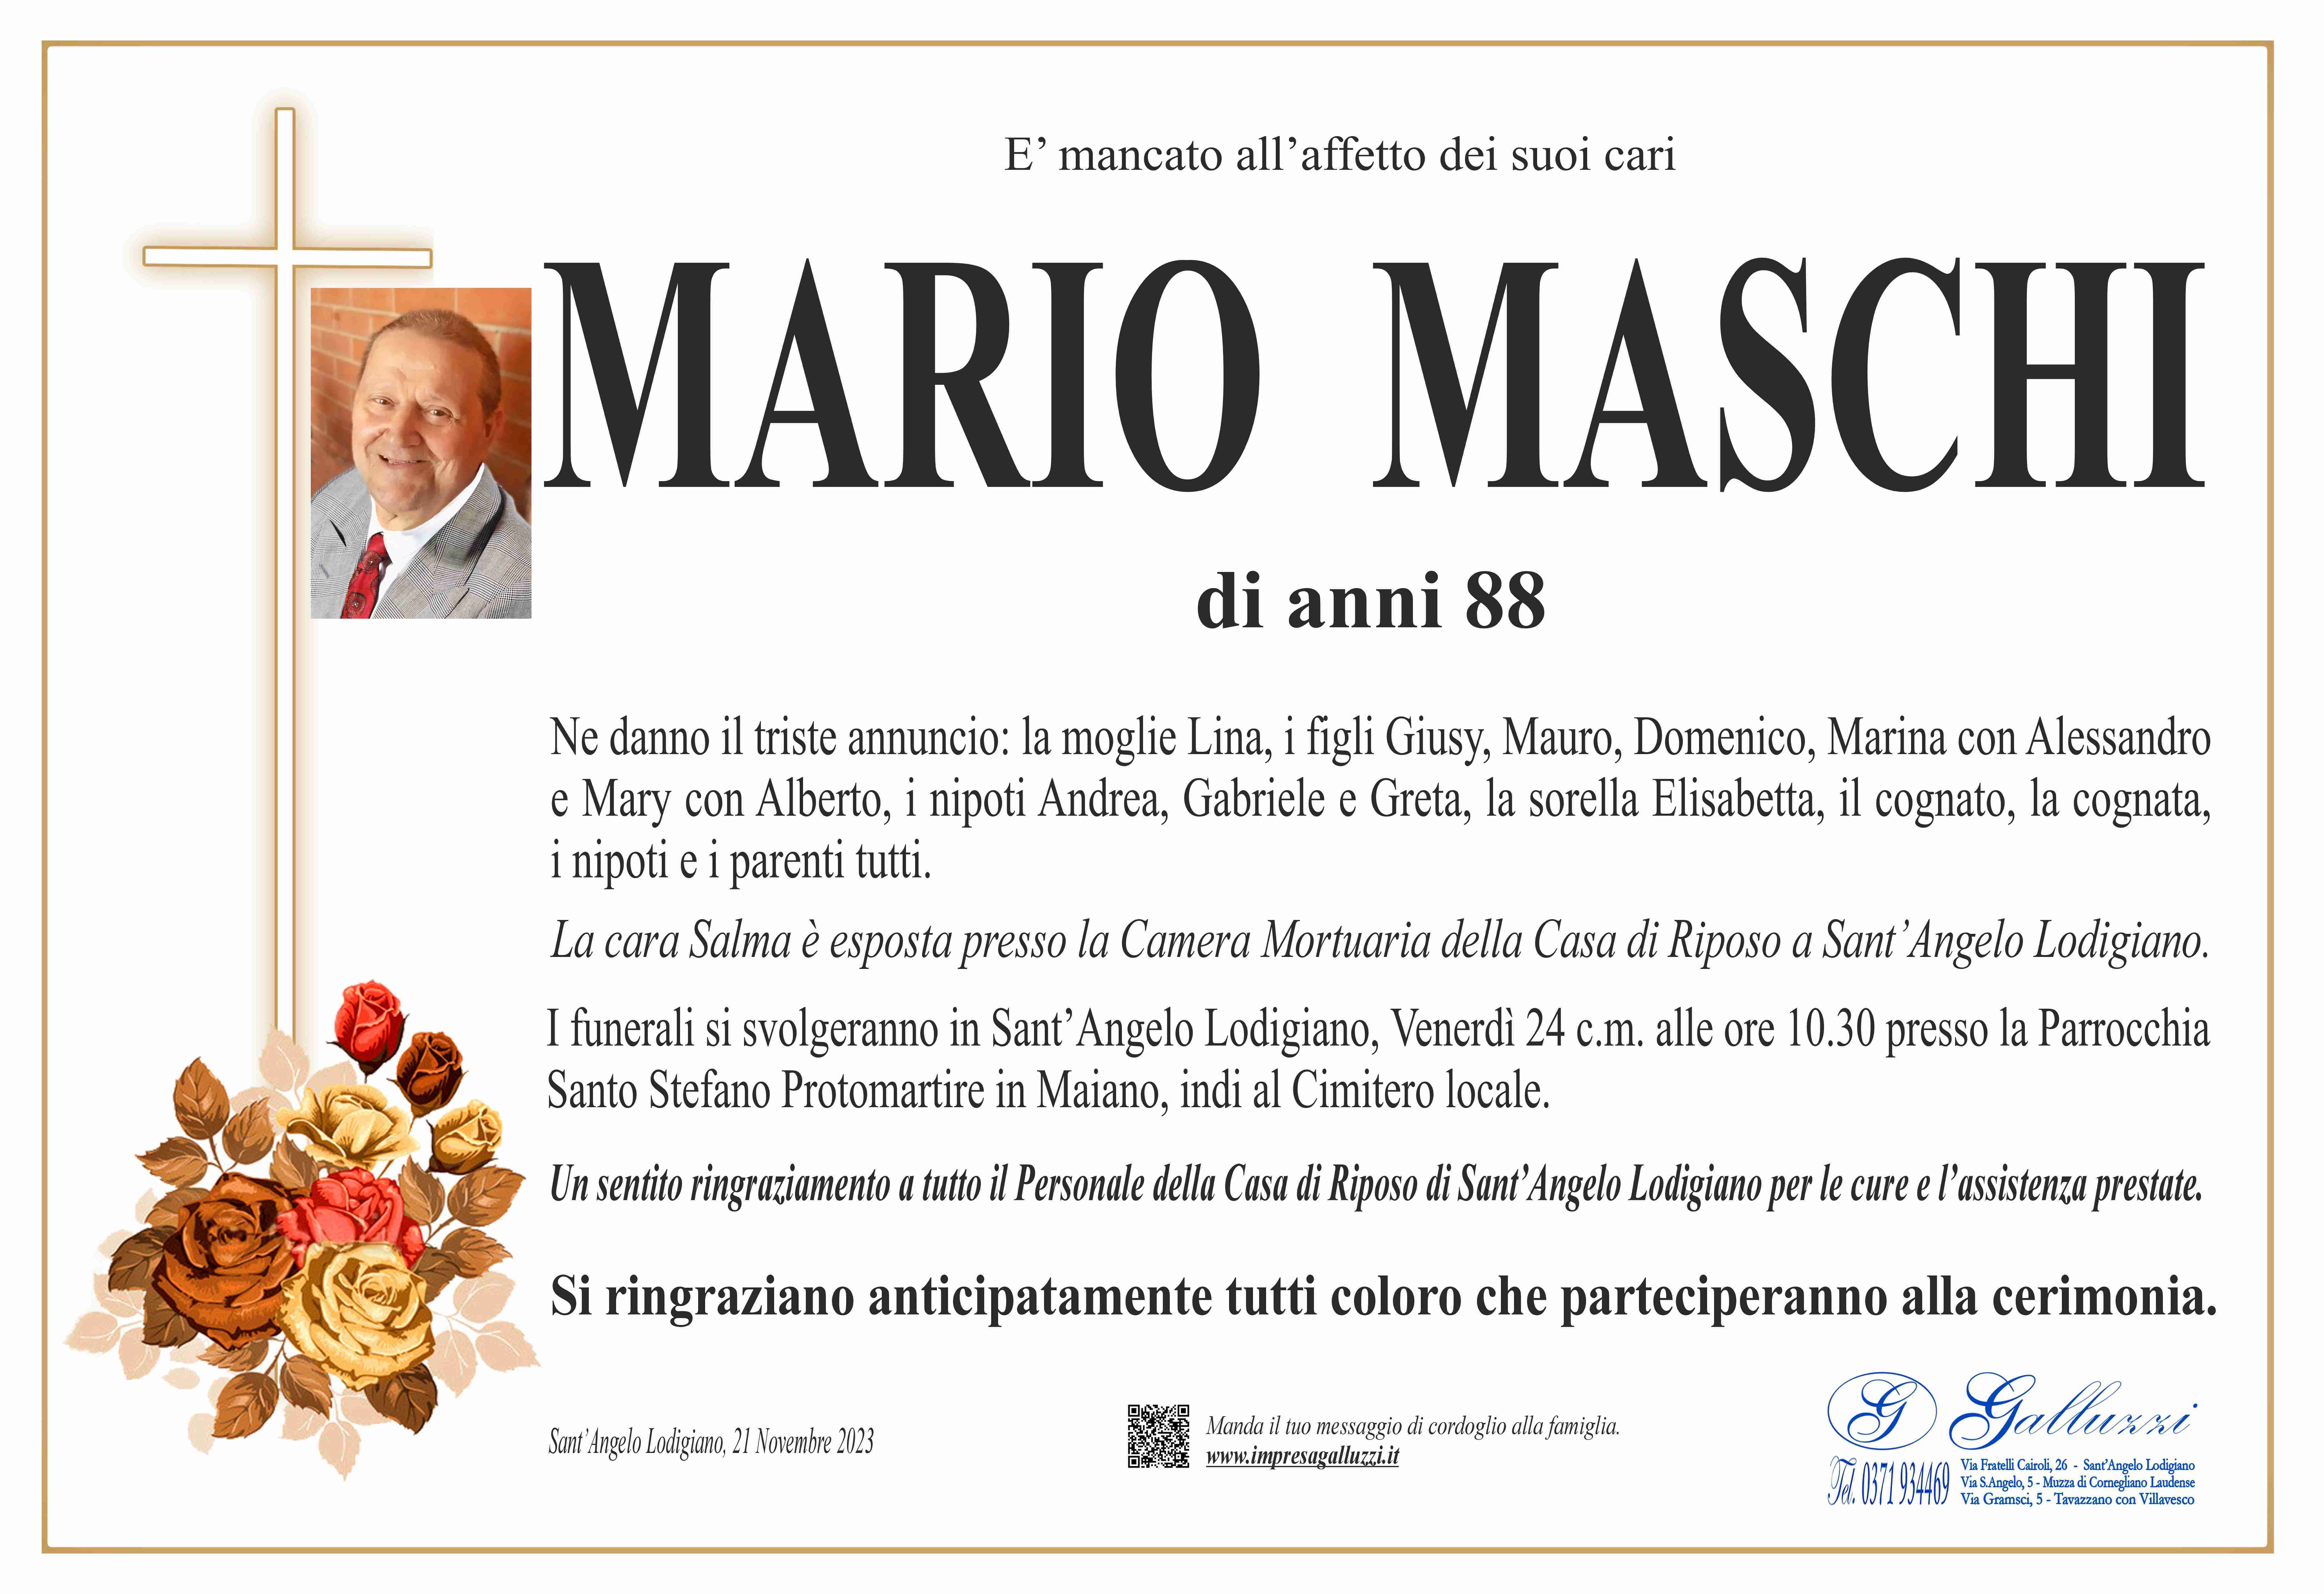 Mario Maschi